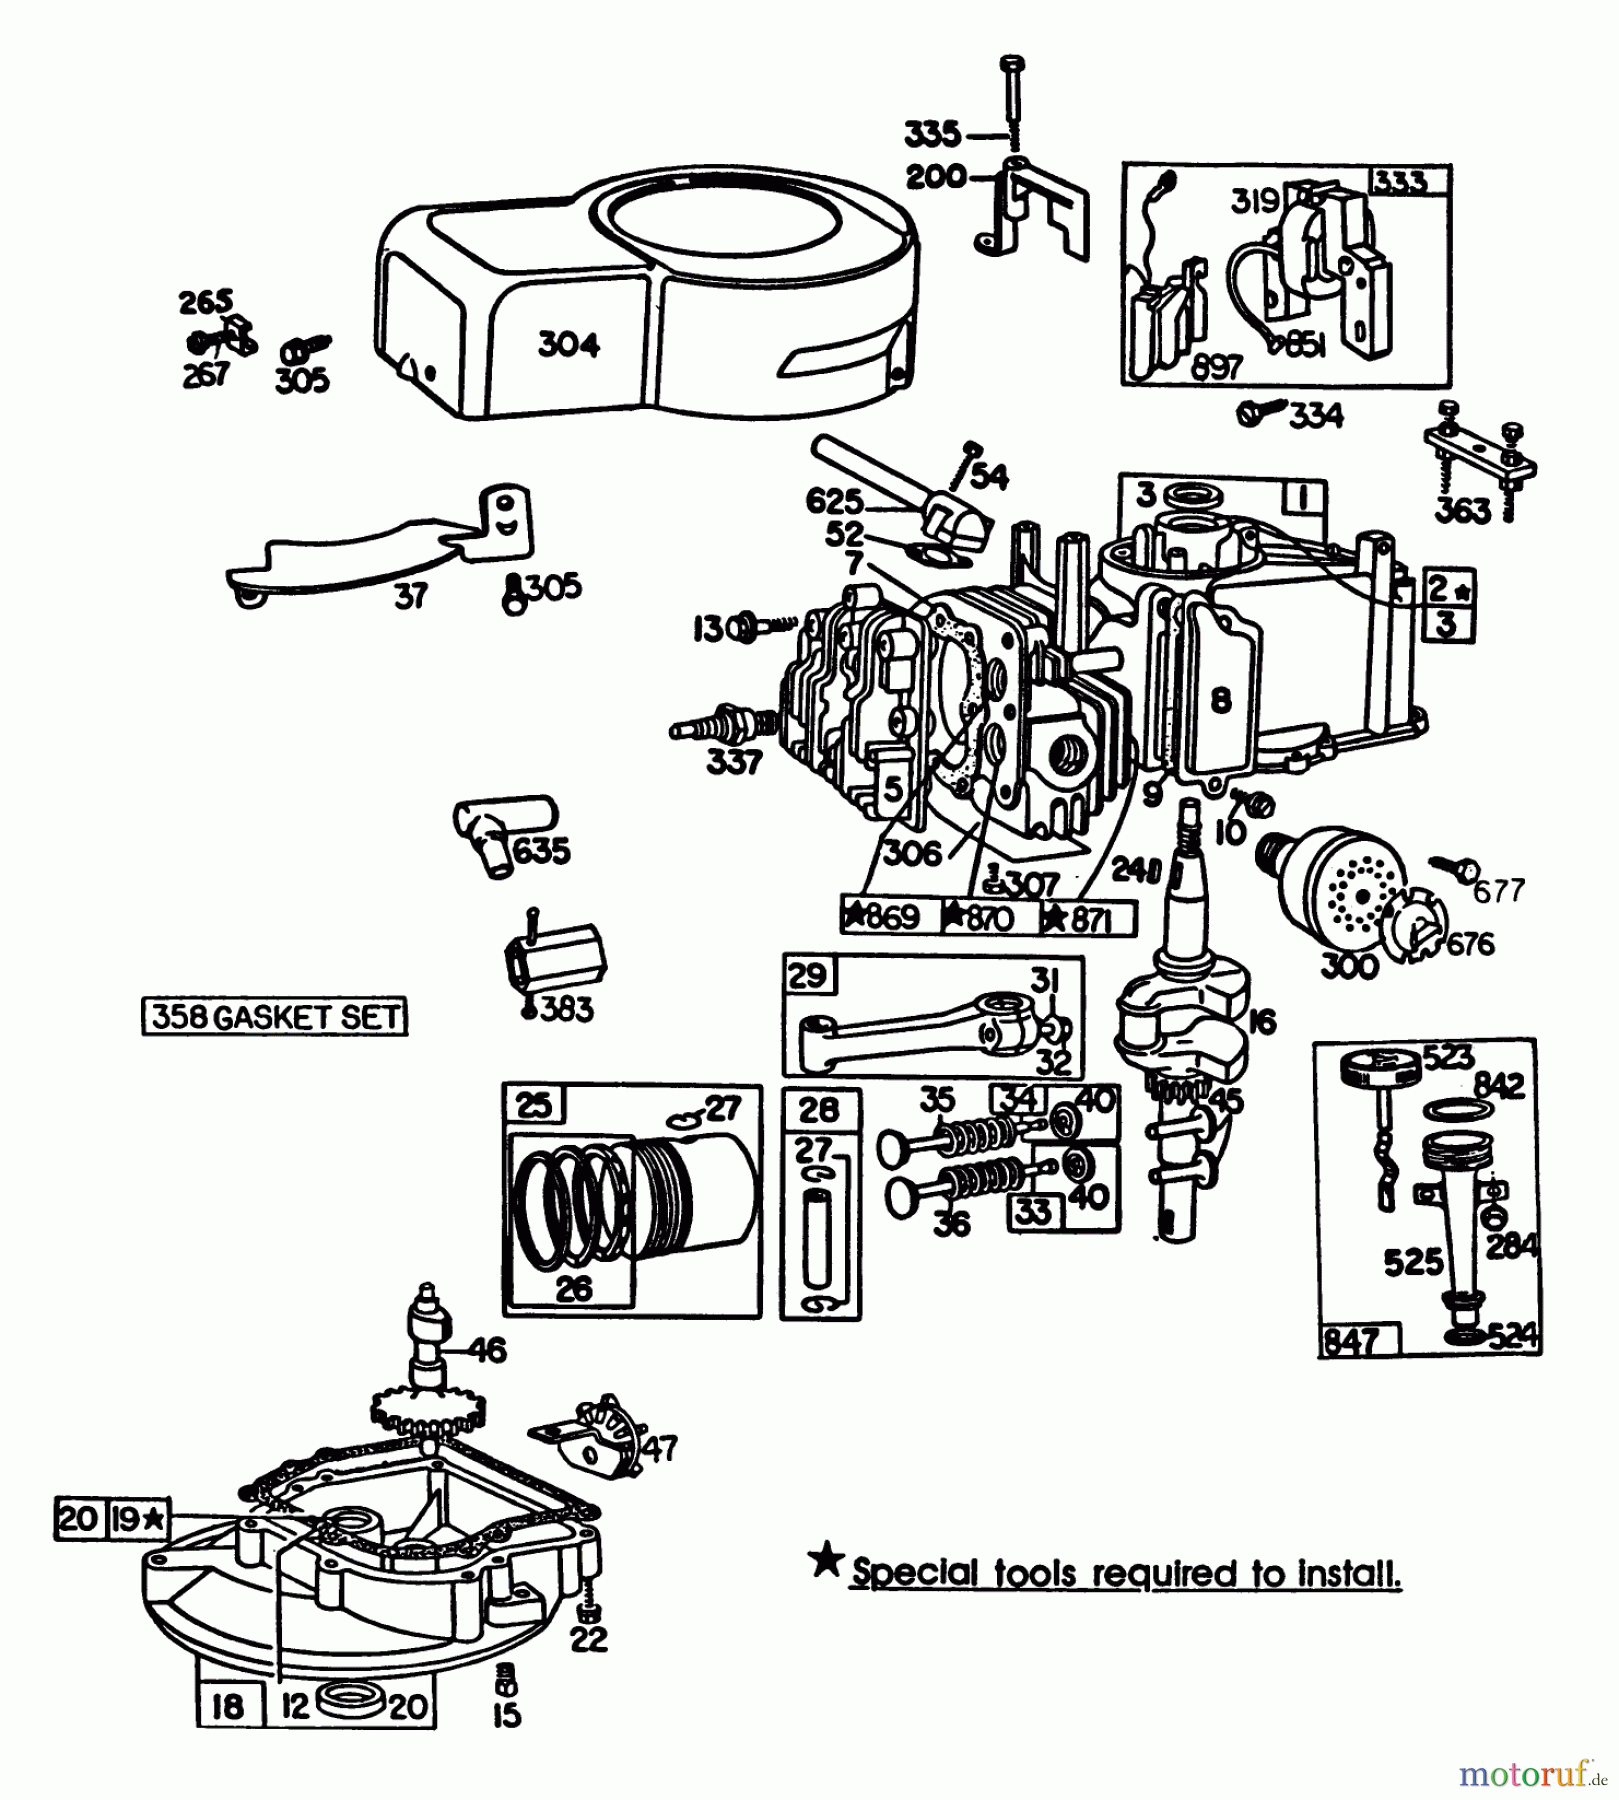  Toro Neu Mowers, Walk-Behind Seite 1 20735 - Toro Lawnmower, 1983 (3000001-3999999) ENGINE BRIGGS & STRATTON MODEL NO. 110908-1207-01